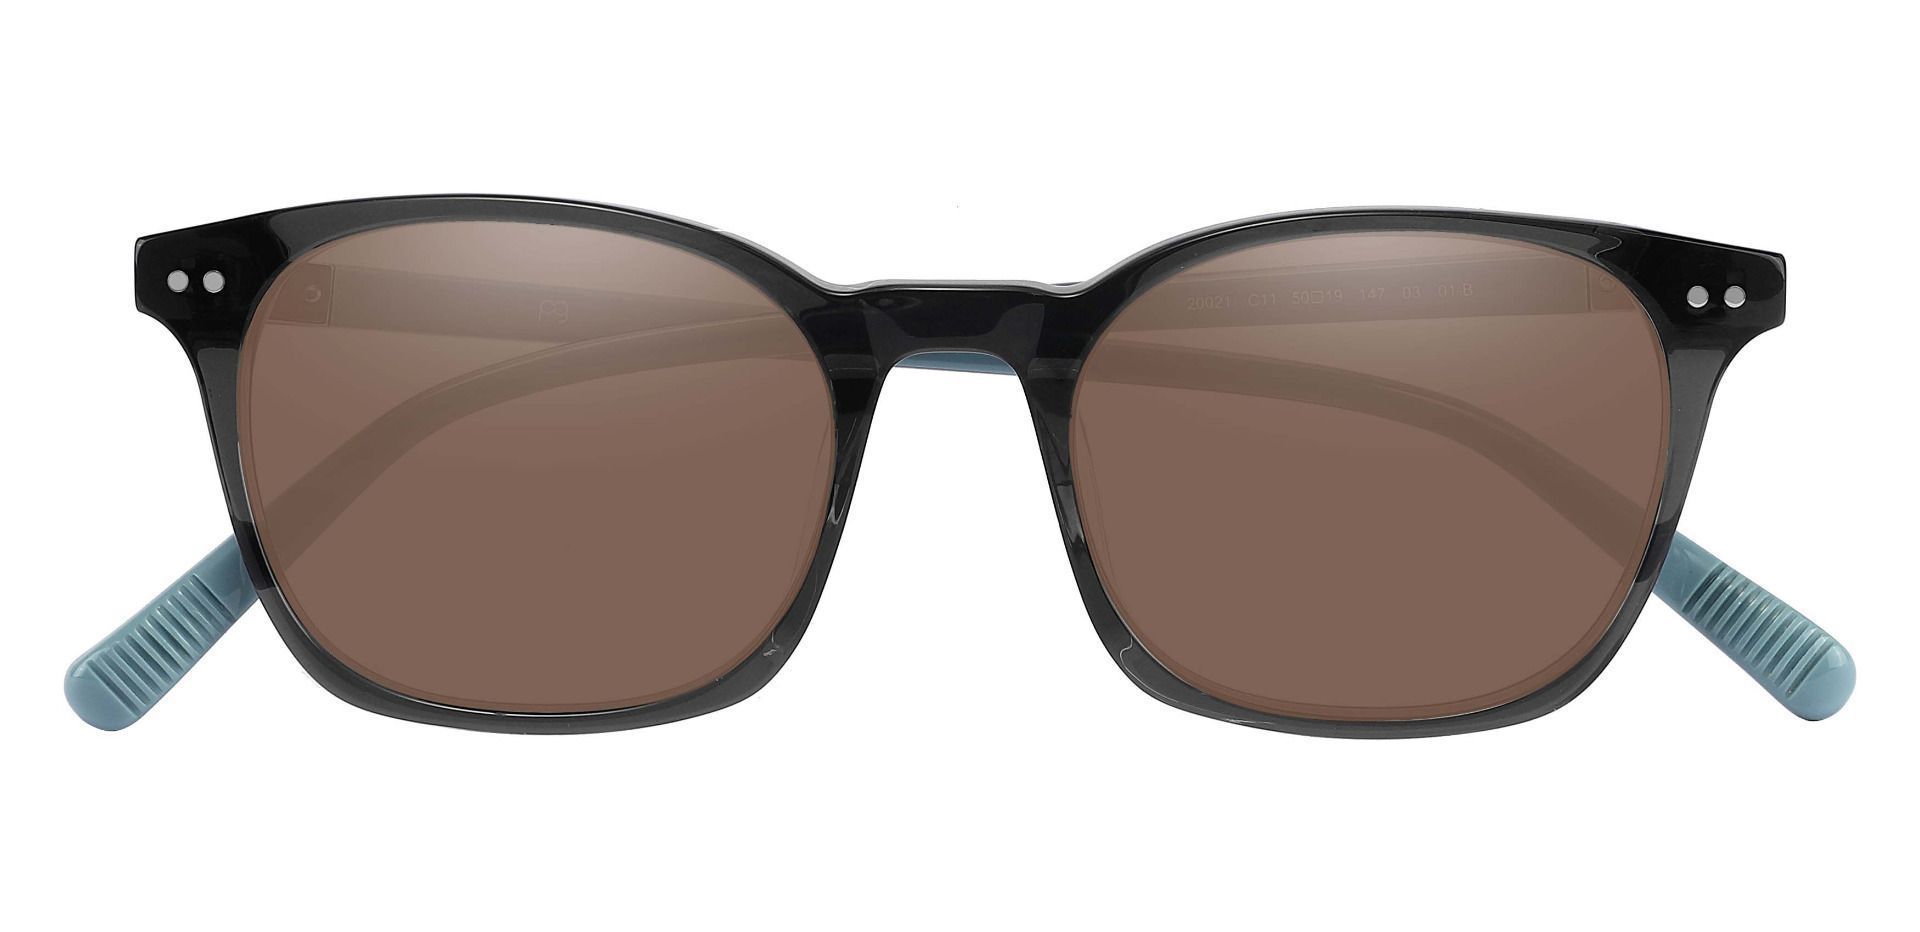 Alonzo Square Prescription Sunglasses - Gray Frame With Brown Lenses